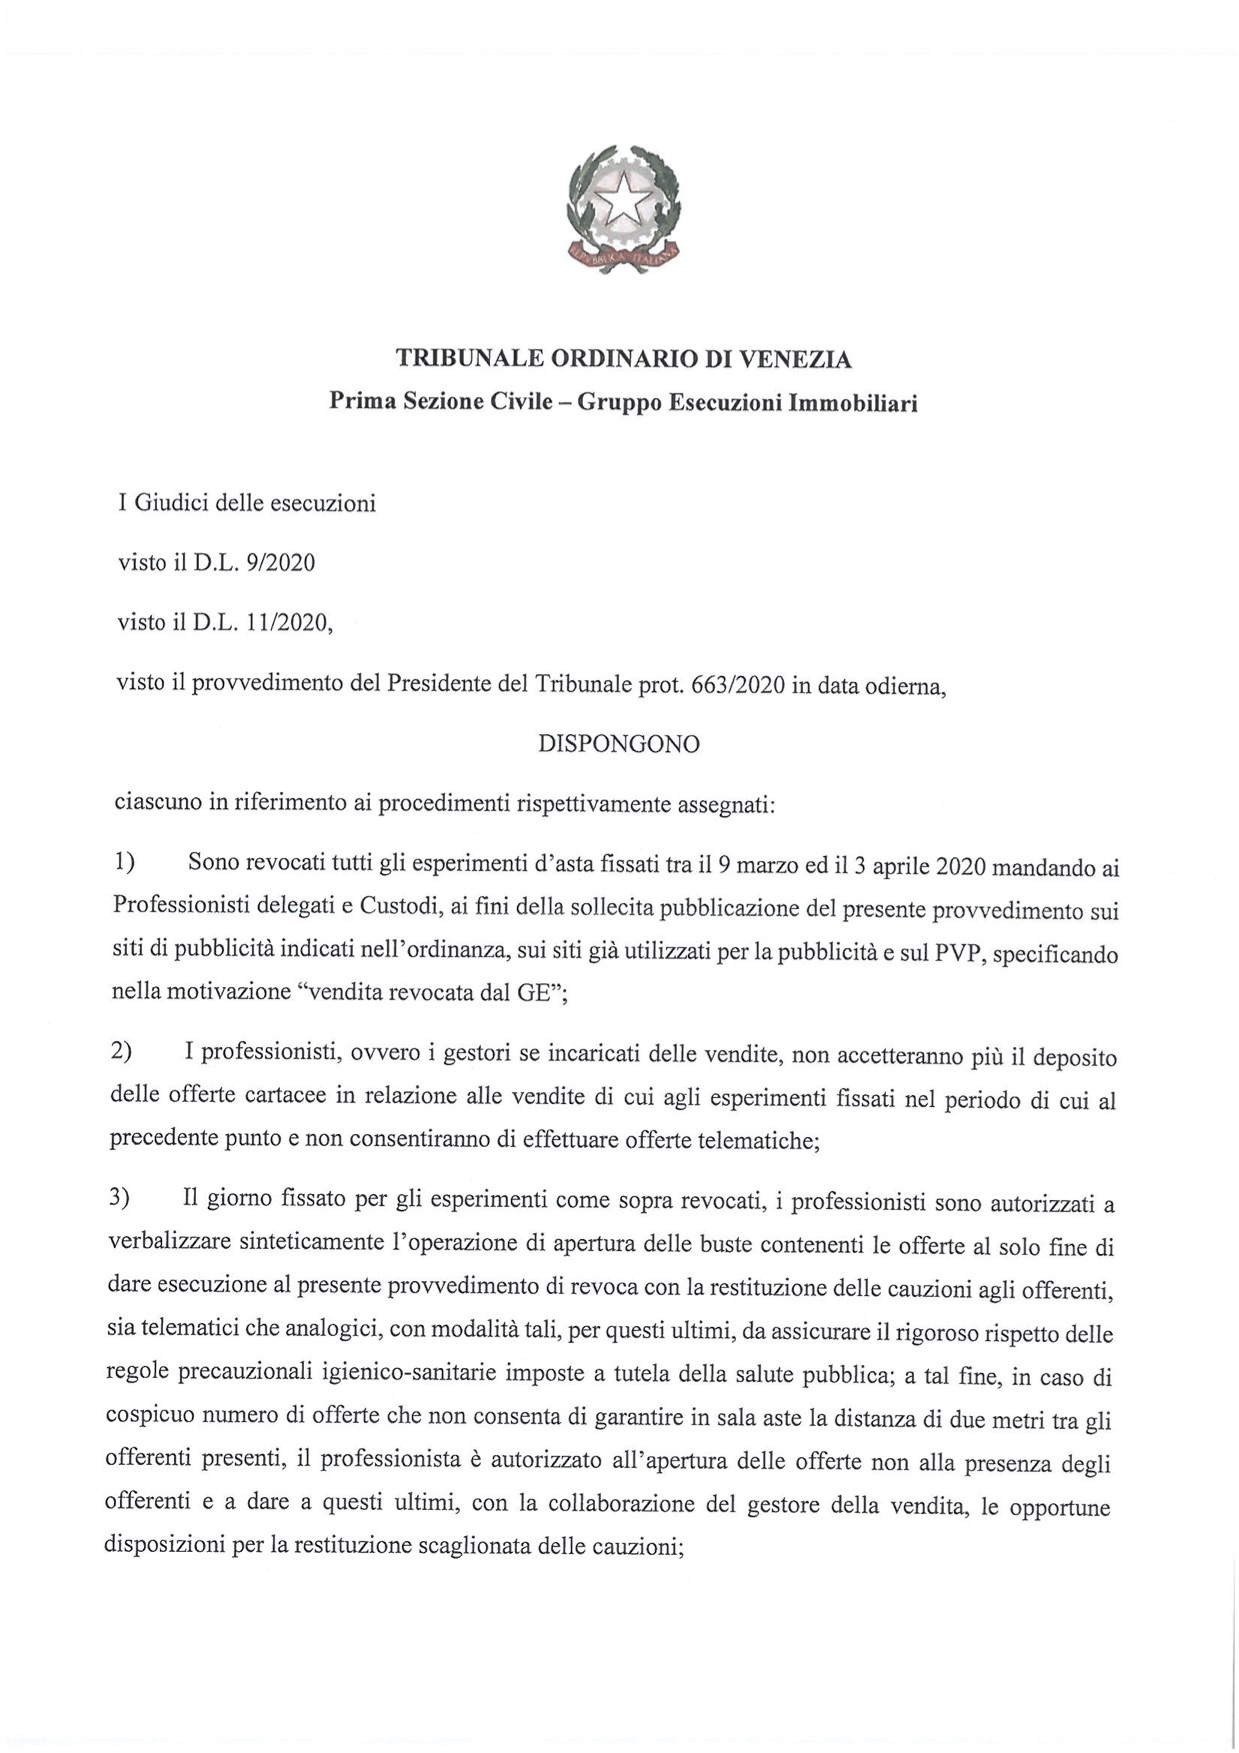 Ordinanza di revoca - Giudici delle esecuzioni del Tribunale di Venezia del 9.03.2020